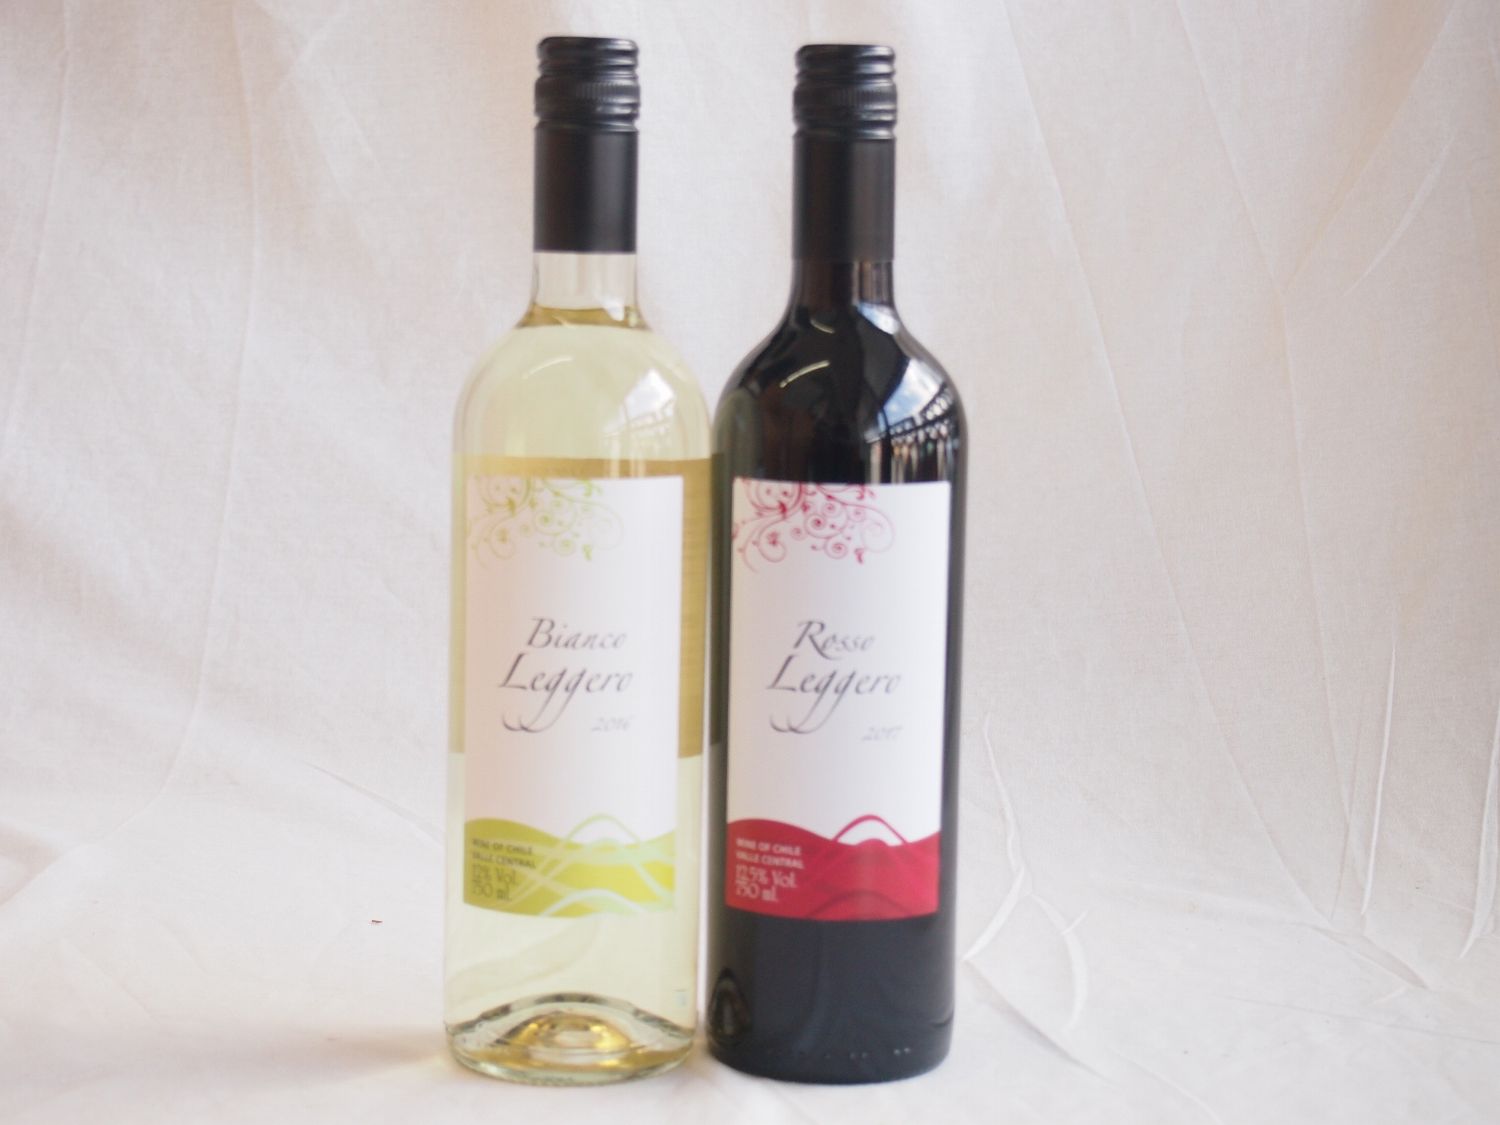 ペアセレクションチリ赤白ワイン2本セット クレマスキ リゲロ・ビアンコ・ロッソ赤白ワイン750ml×2本